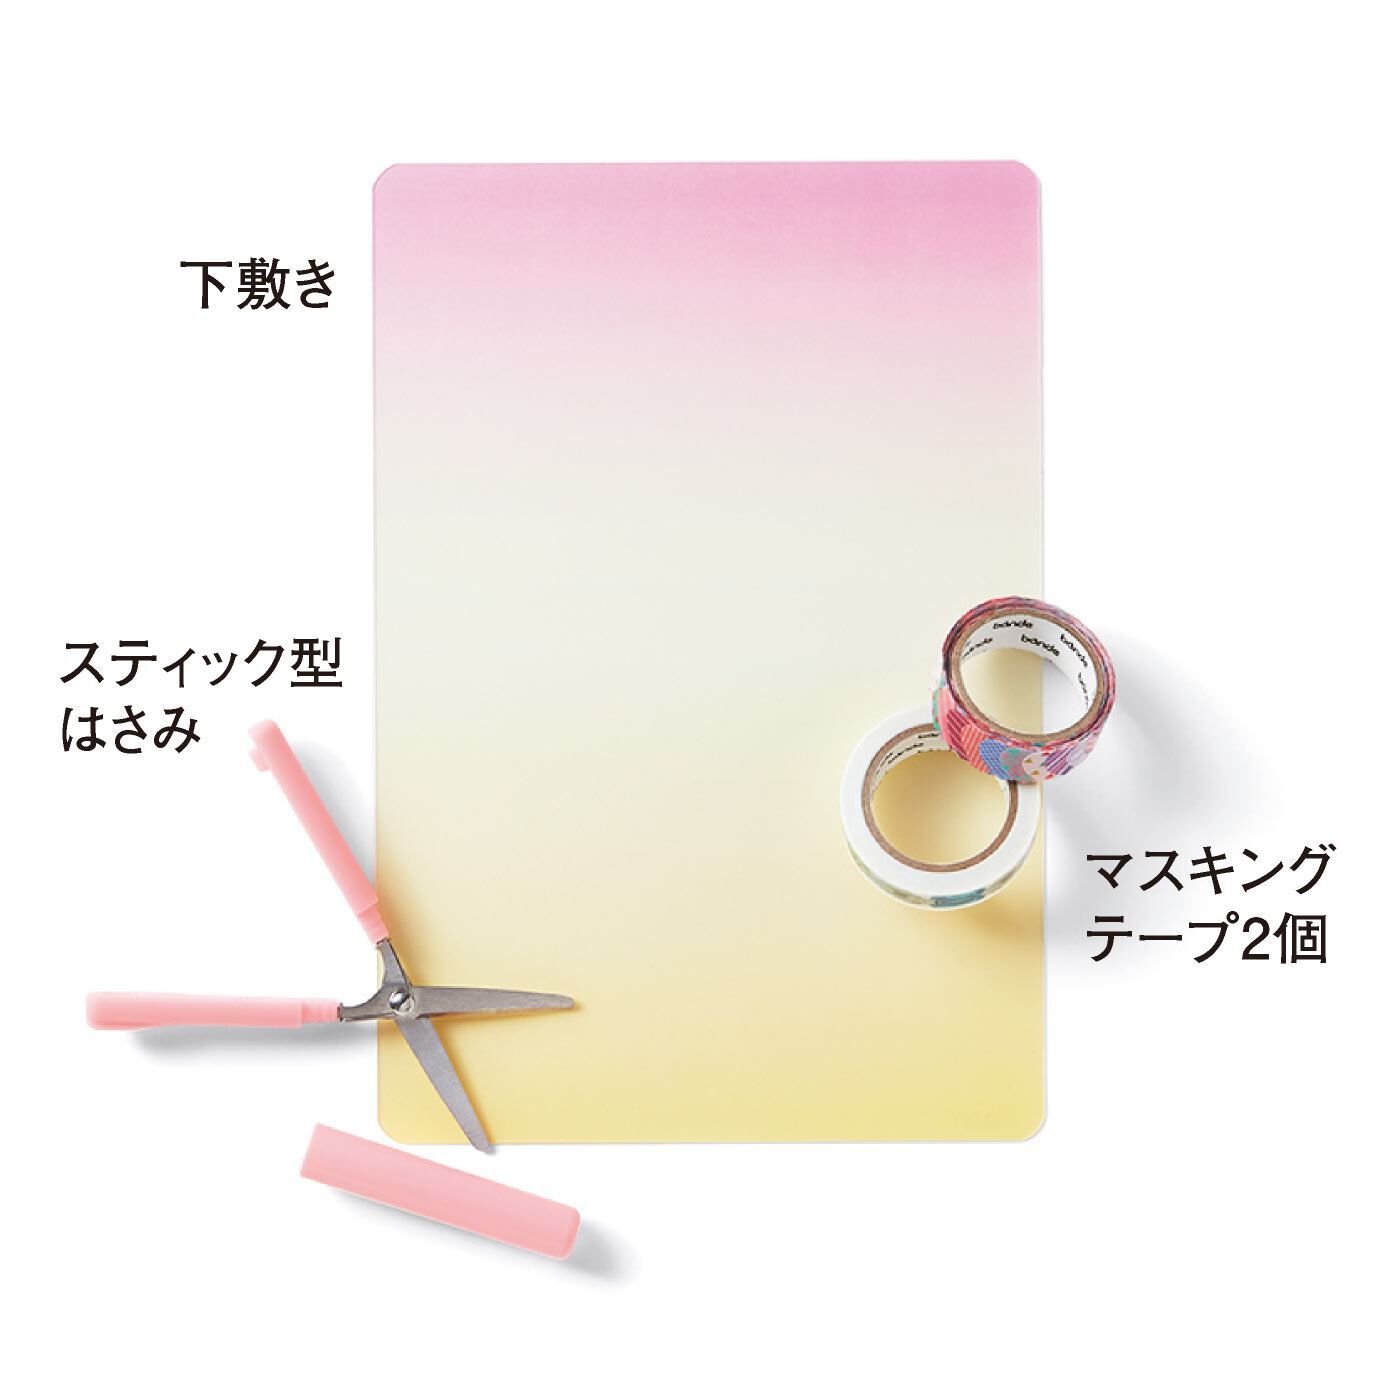 ミニツク|手帳プランナーmiyuさんセレクト　使える！かわいい手帳デコセット|お届けセット内容です。